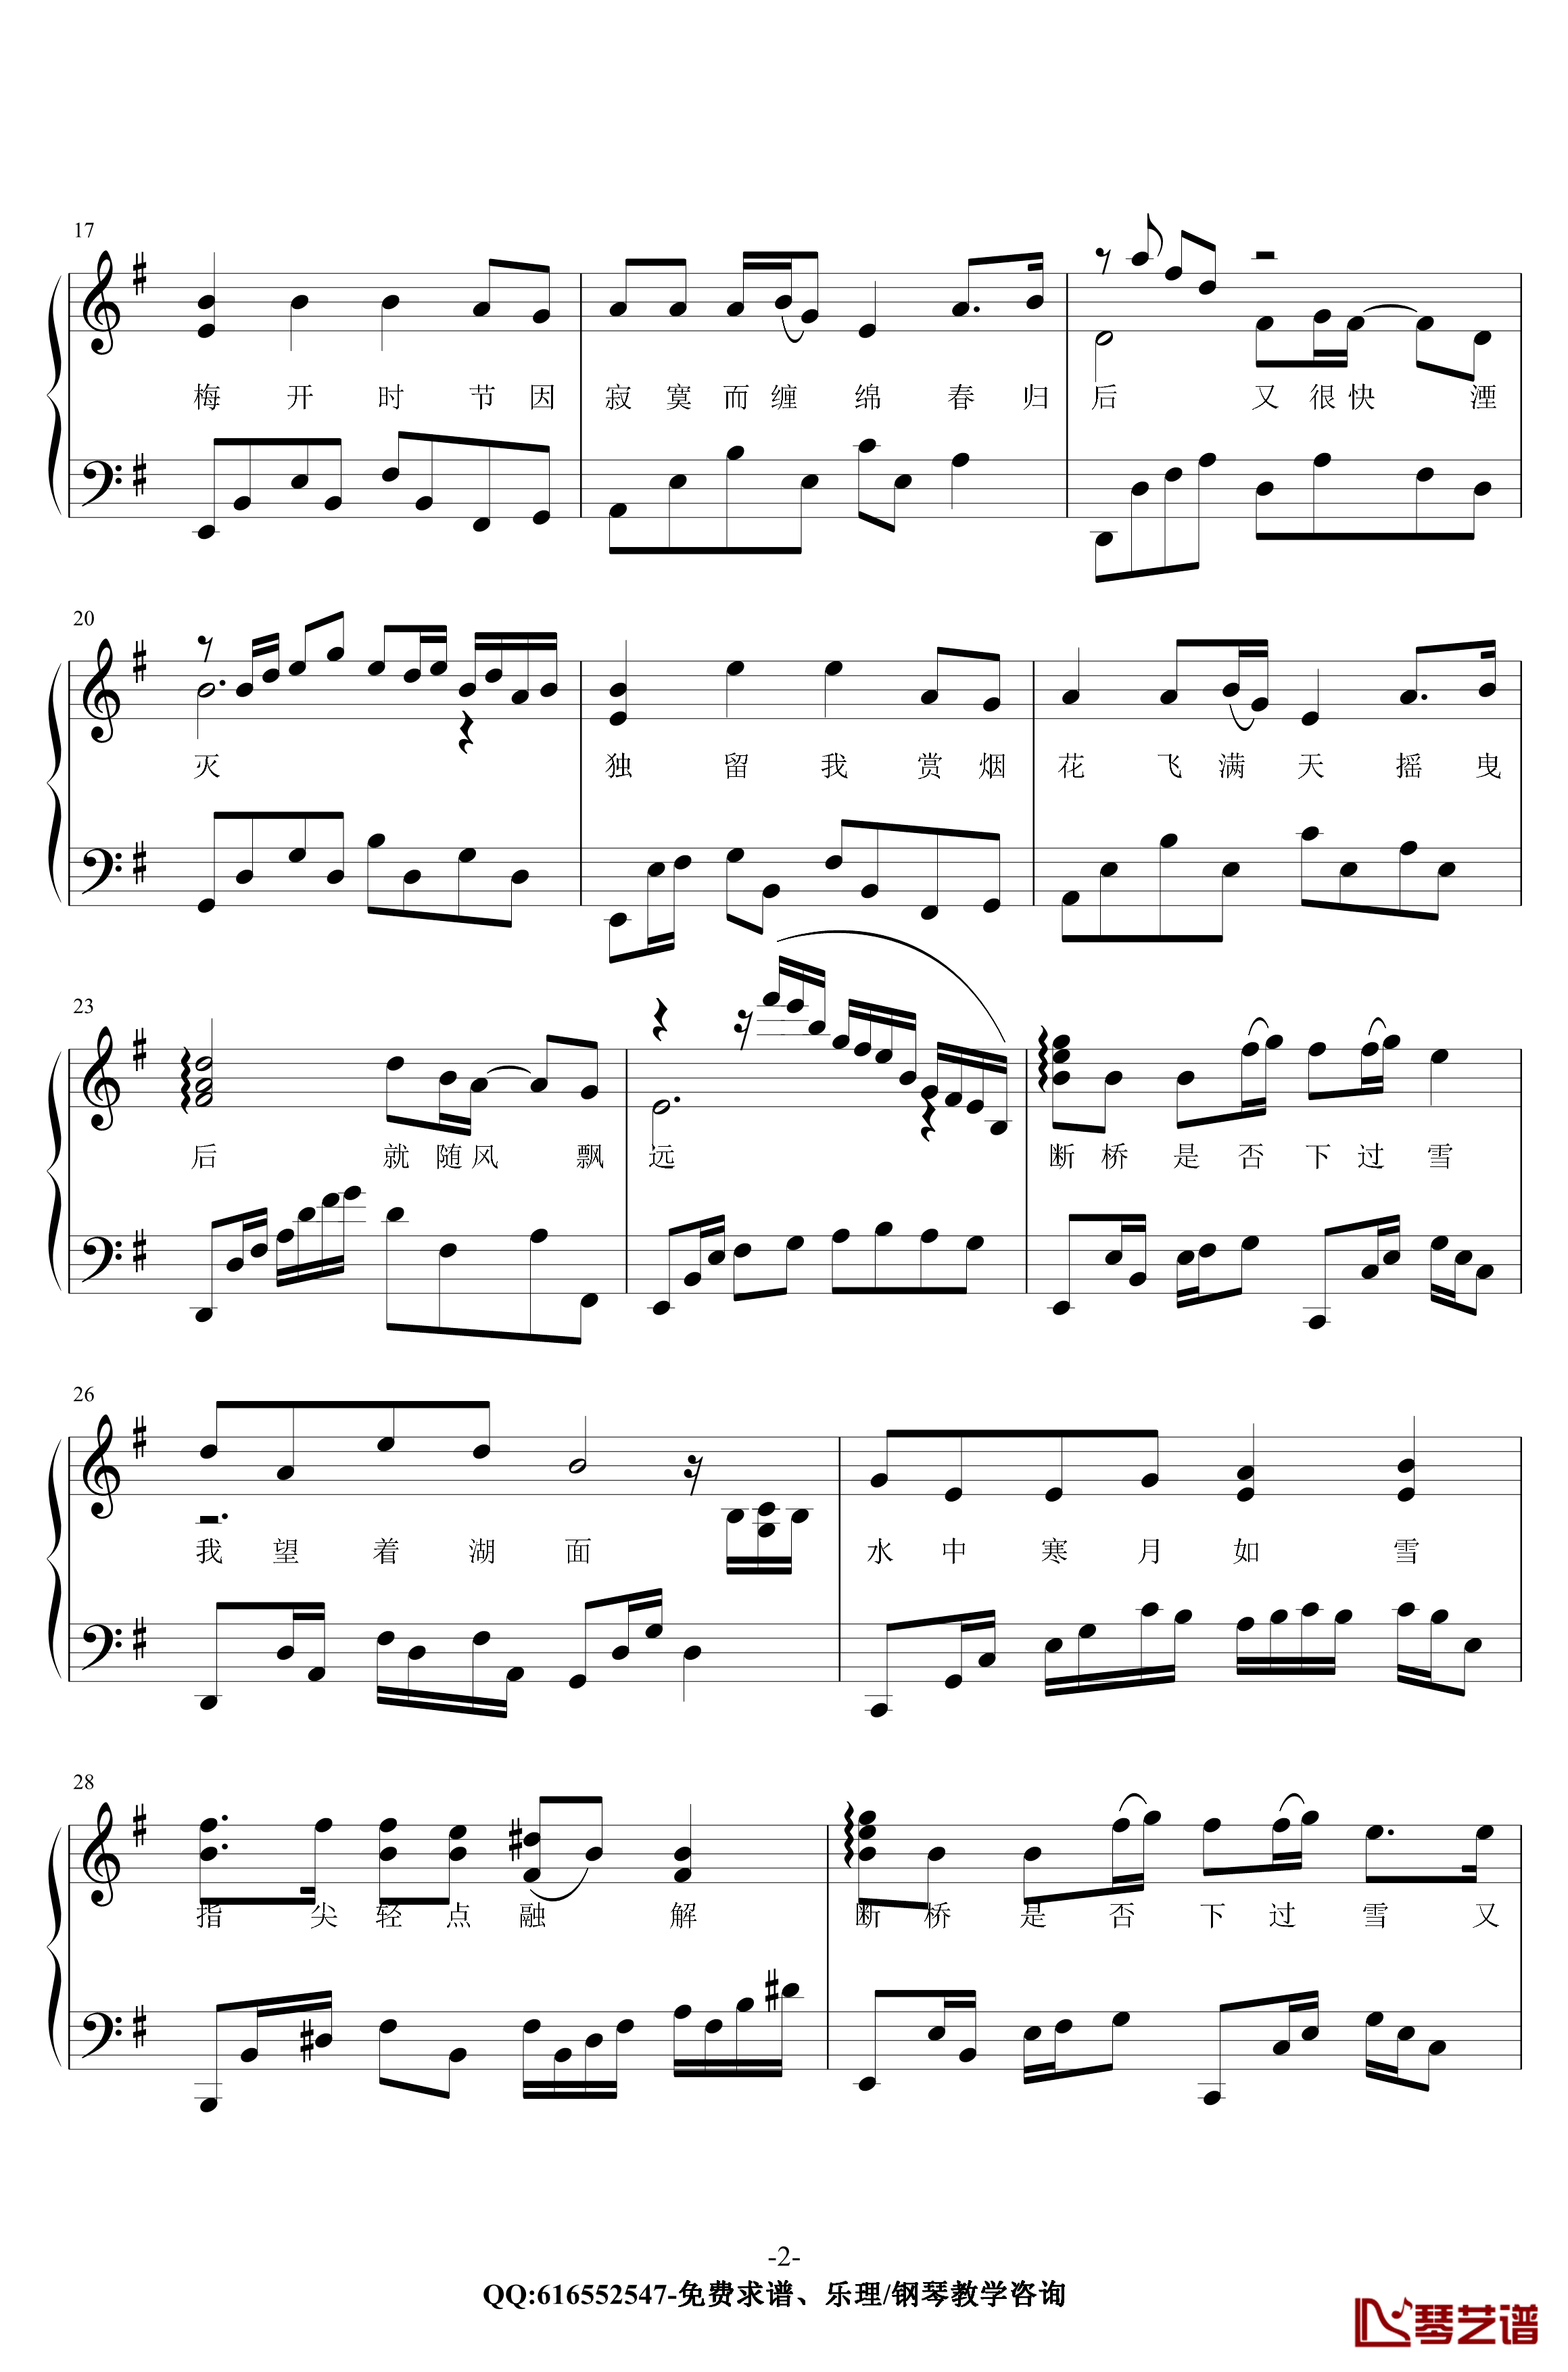 断桥残雪钢琴谱-金老师原声独奏版180117-许嵩2